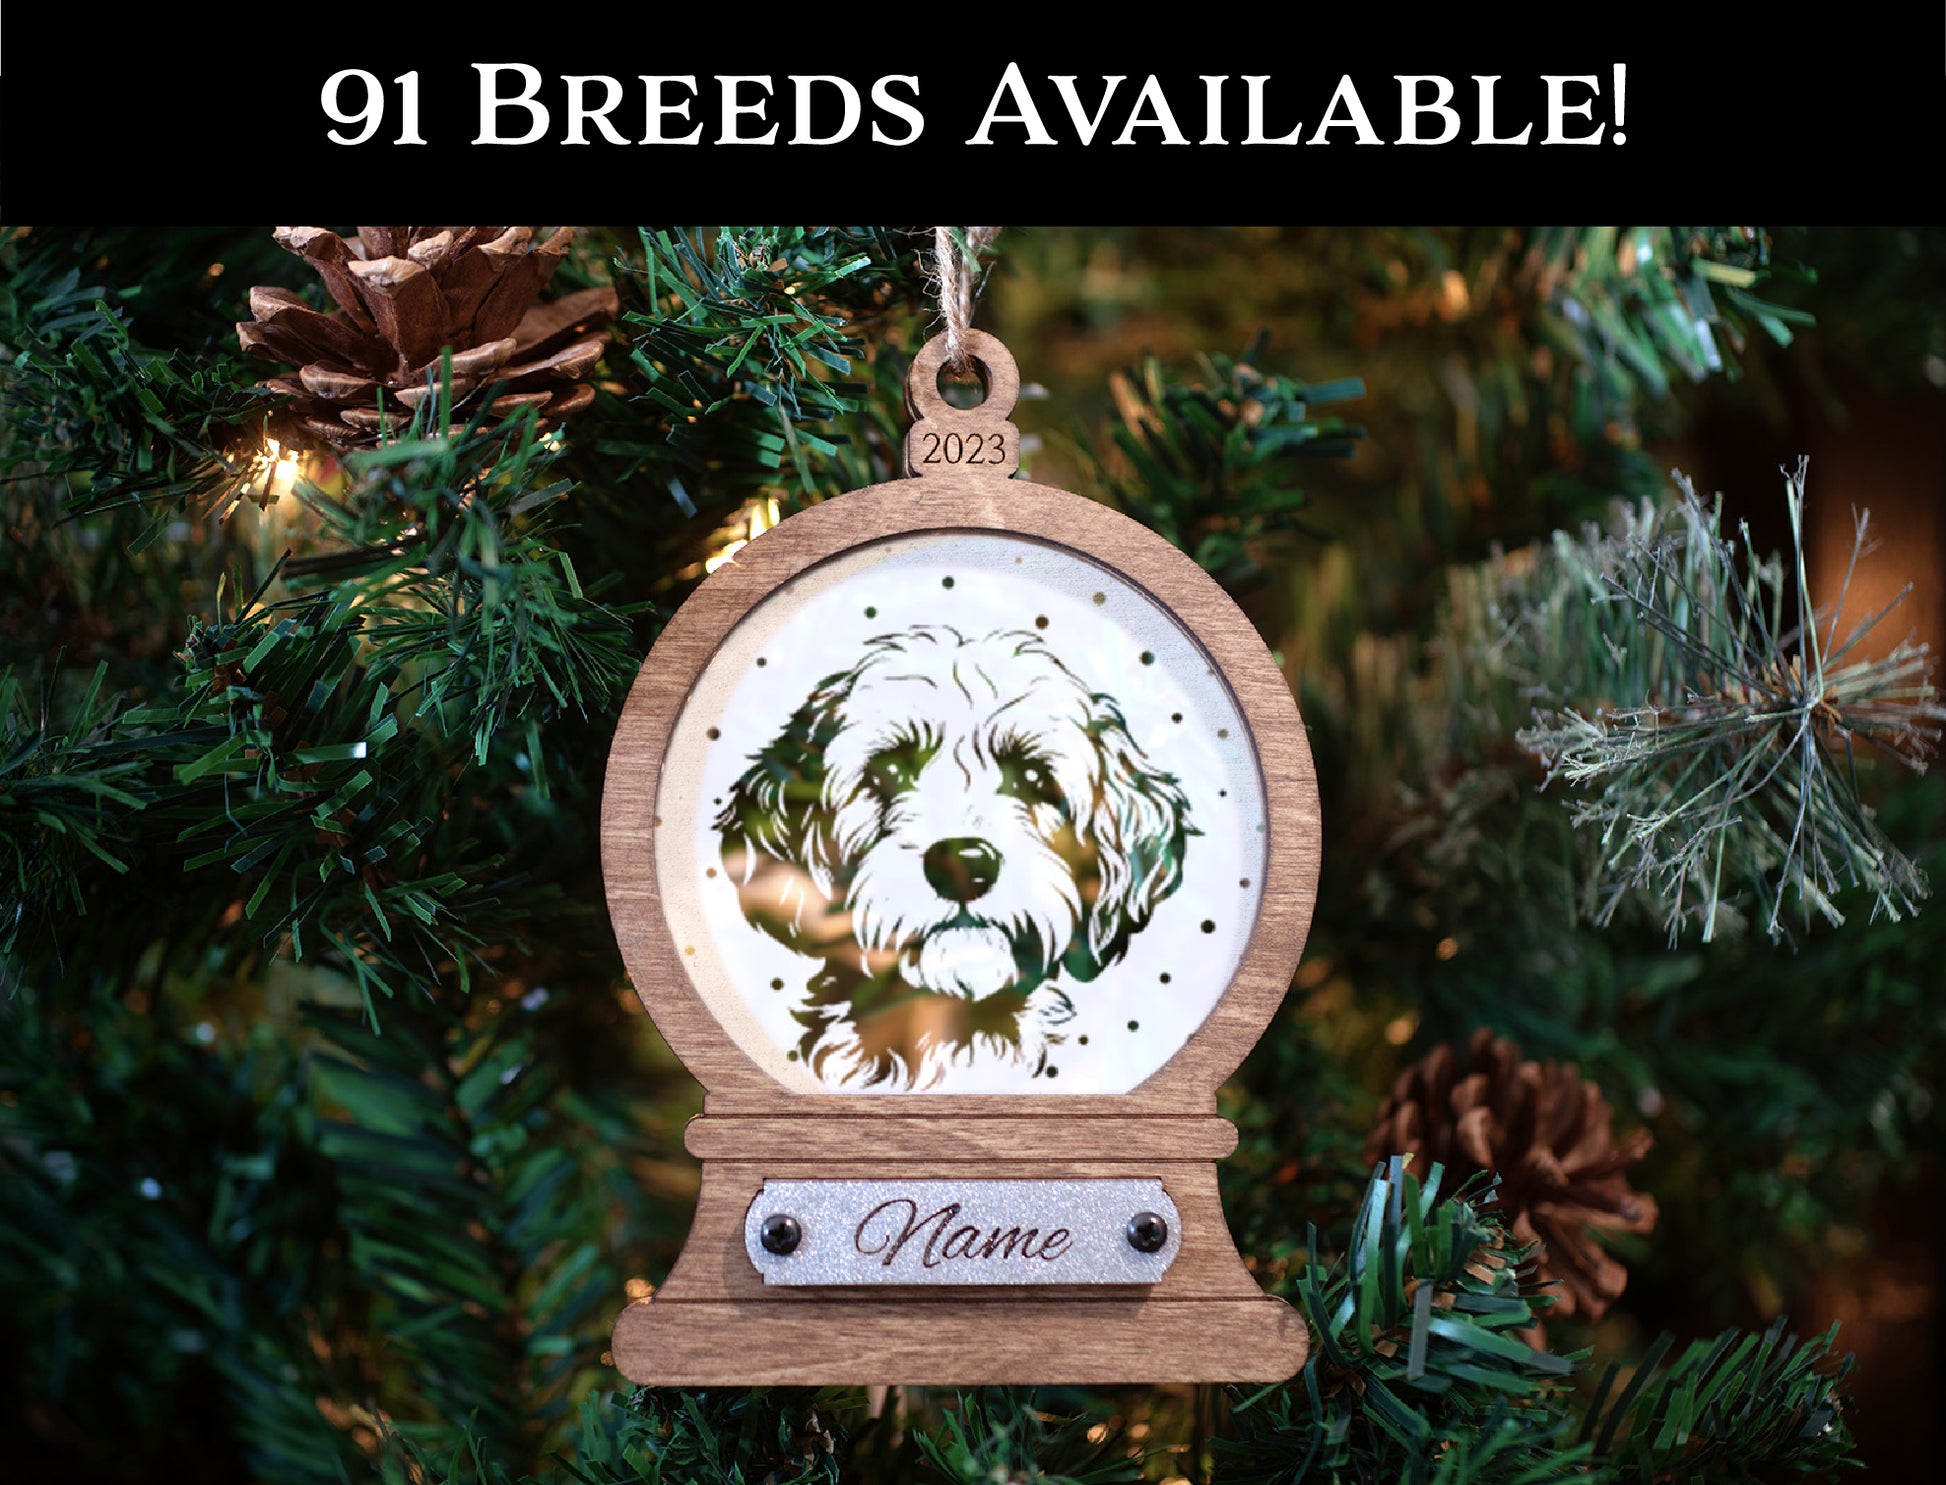 USA Handcrafted Papillon Dog Memorial Holiday Keepsake Christmas